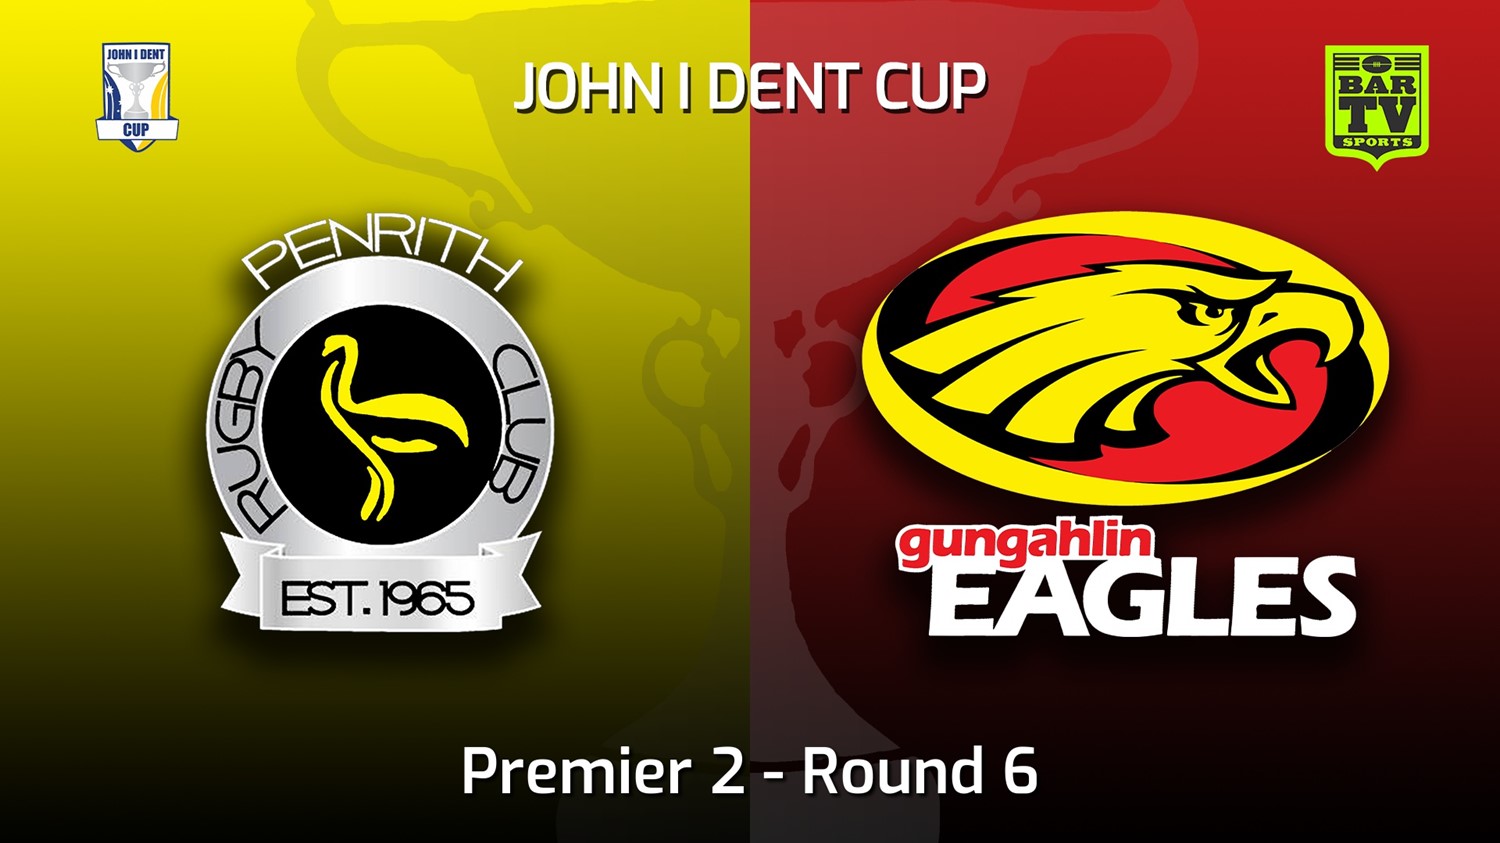 220528-John I Dent (ACT) Round 6 - Premier 2 - Penrith Emus v Gungahlin Eagles Slate Image